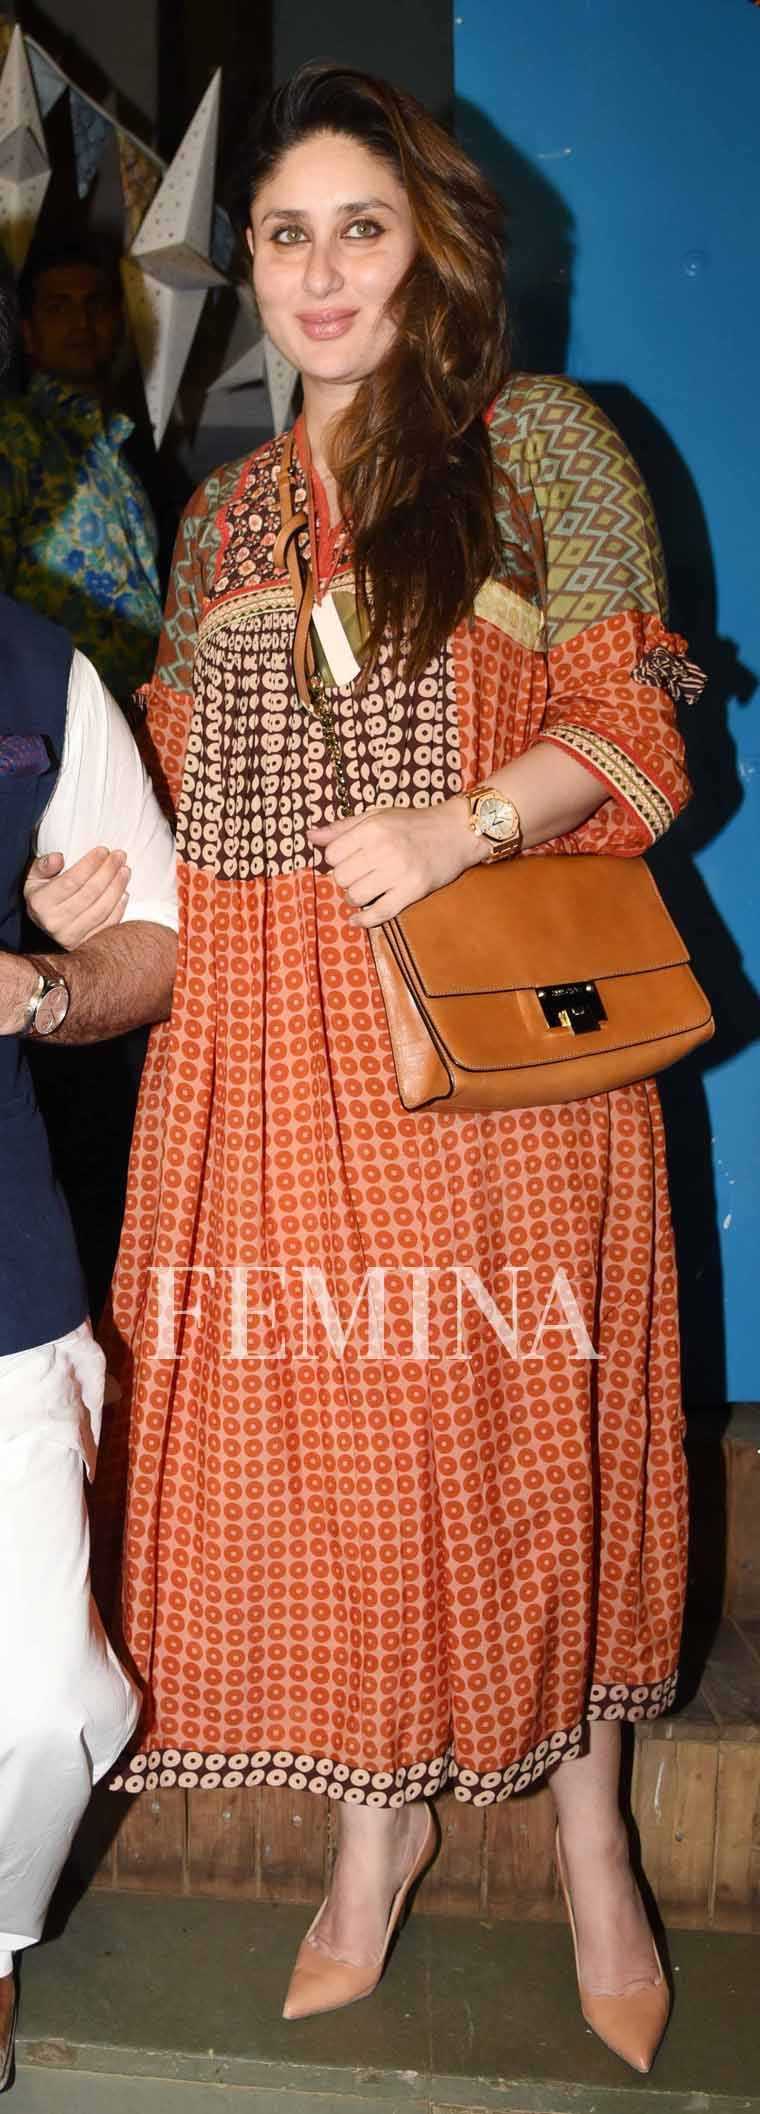 Kareena Kapoor Khan printed maxi dress post-pregnancy look